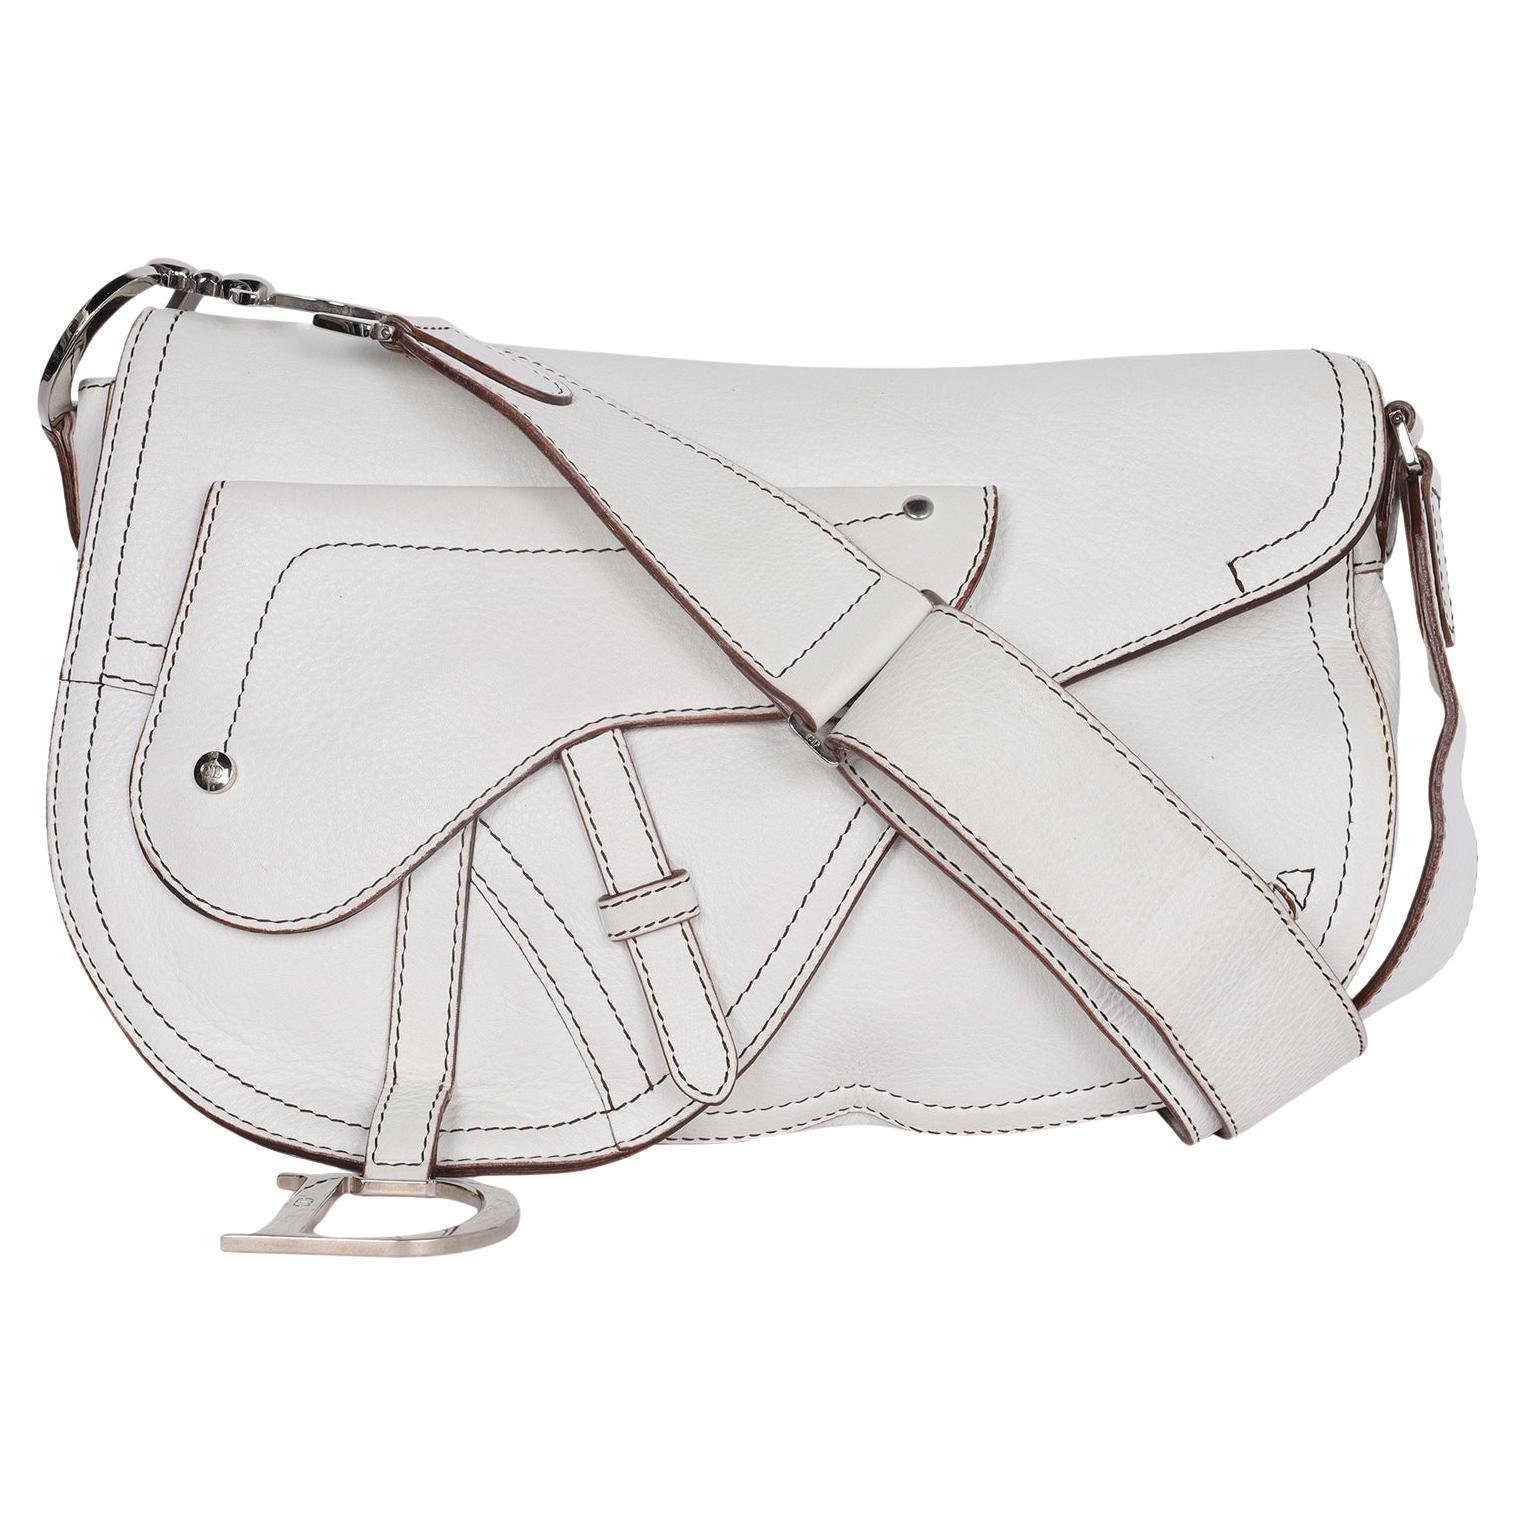 Authentische, gebrauchte Christian Dior White Leather Saddle Messenger Crossbody Bag. Sie verfügt über großartige Designelemente aus strapazierfähigem weißem Leder in der mittlerweile ikonischen Dior-Satteltasche mit einem auffälligen dekorativen